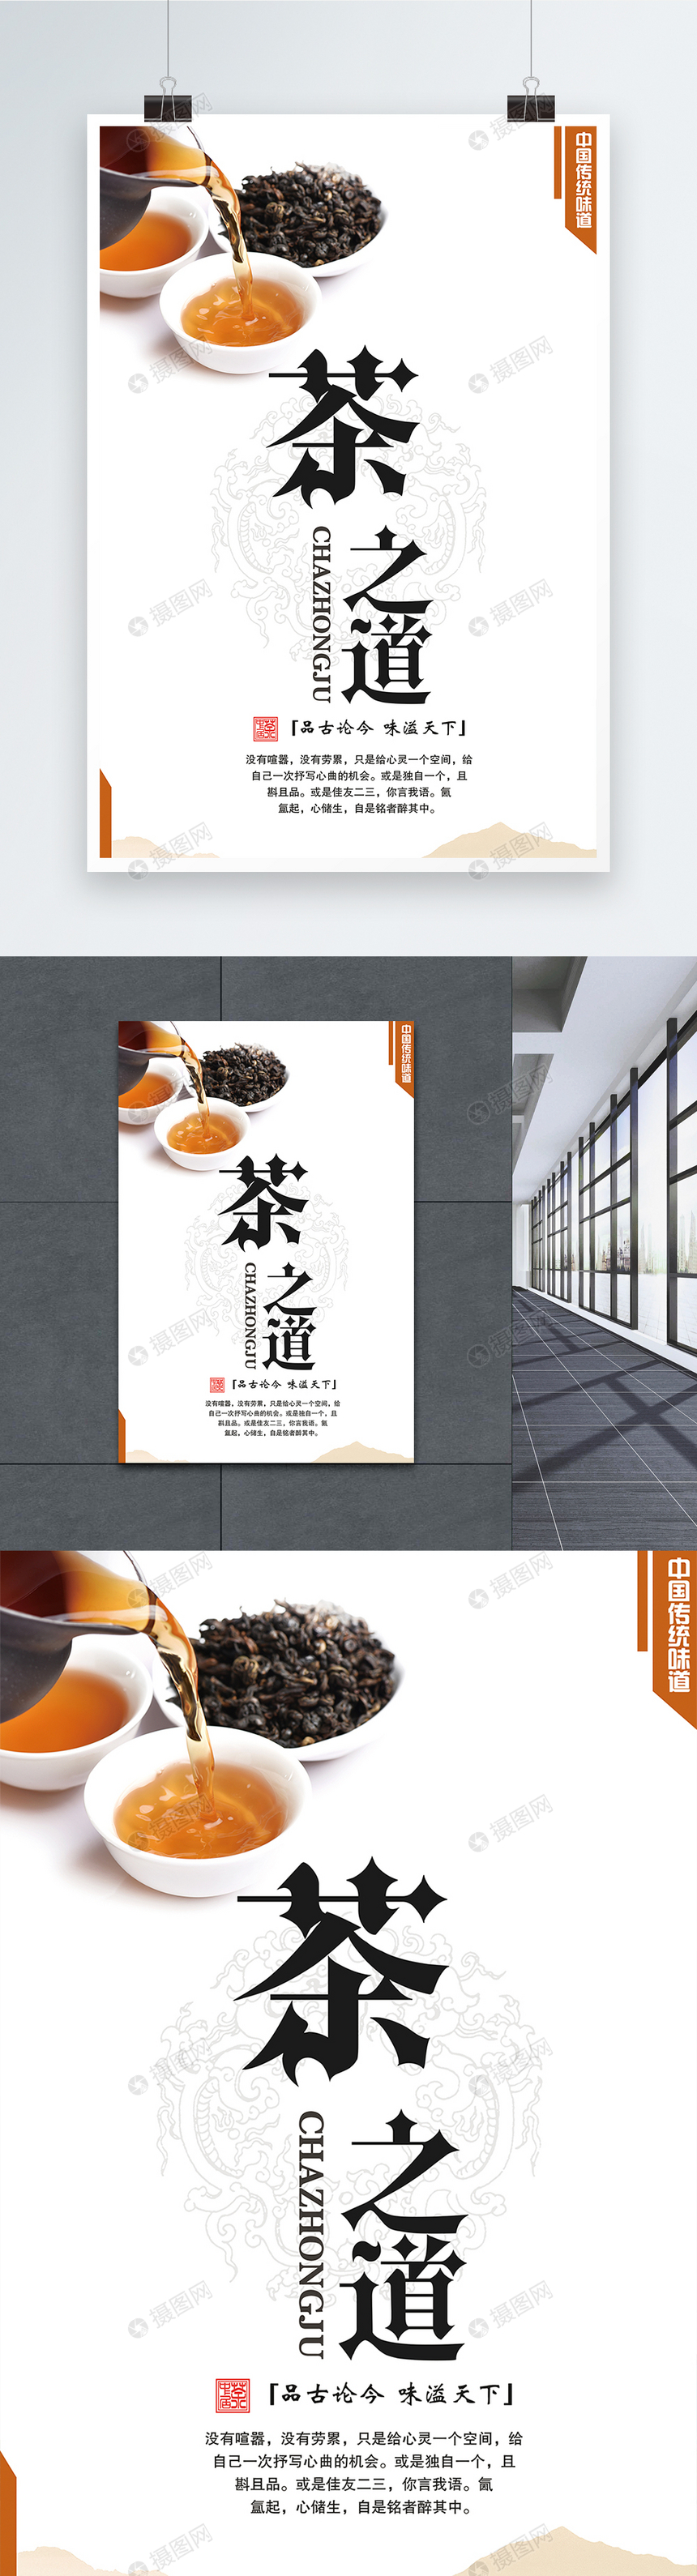 中国传统味道茶叶文化宣传海报图片